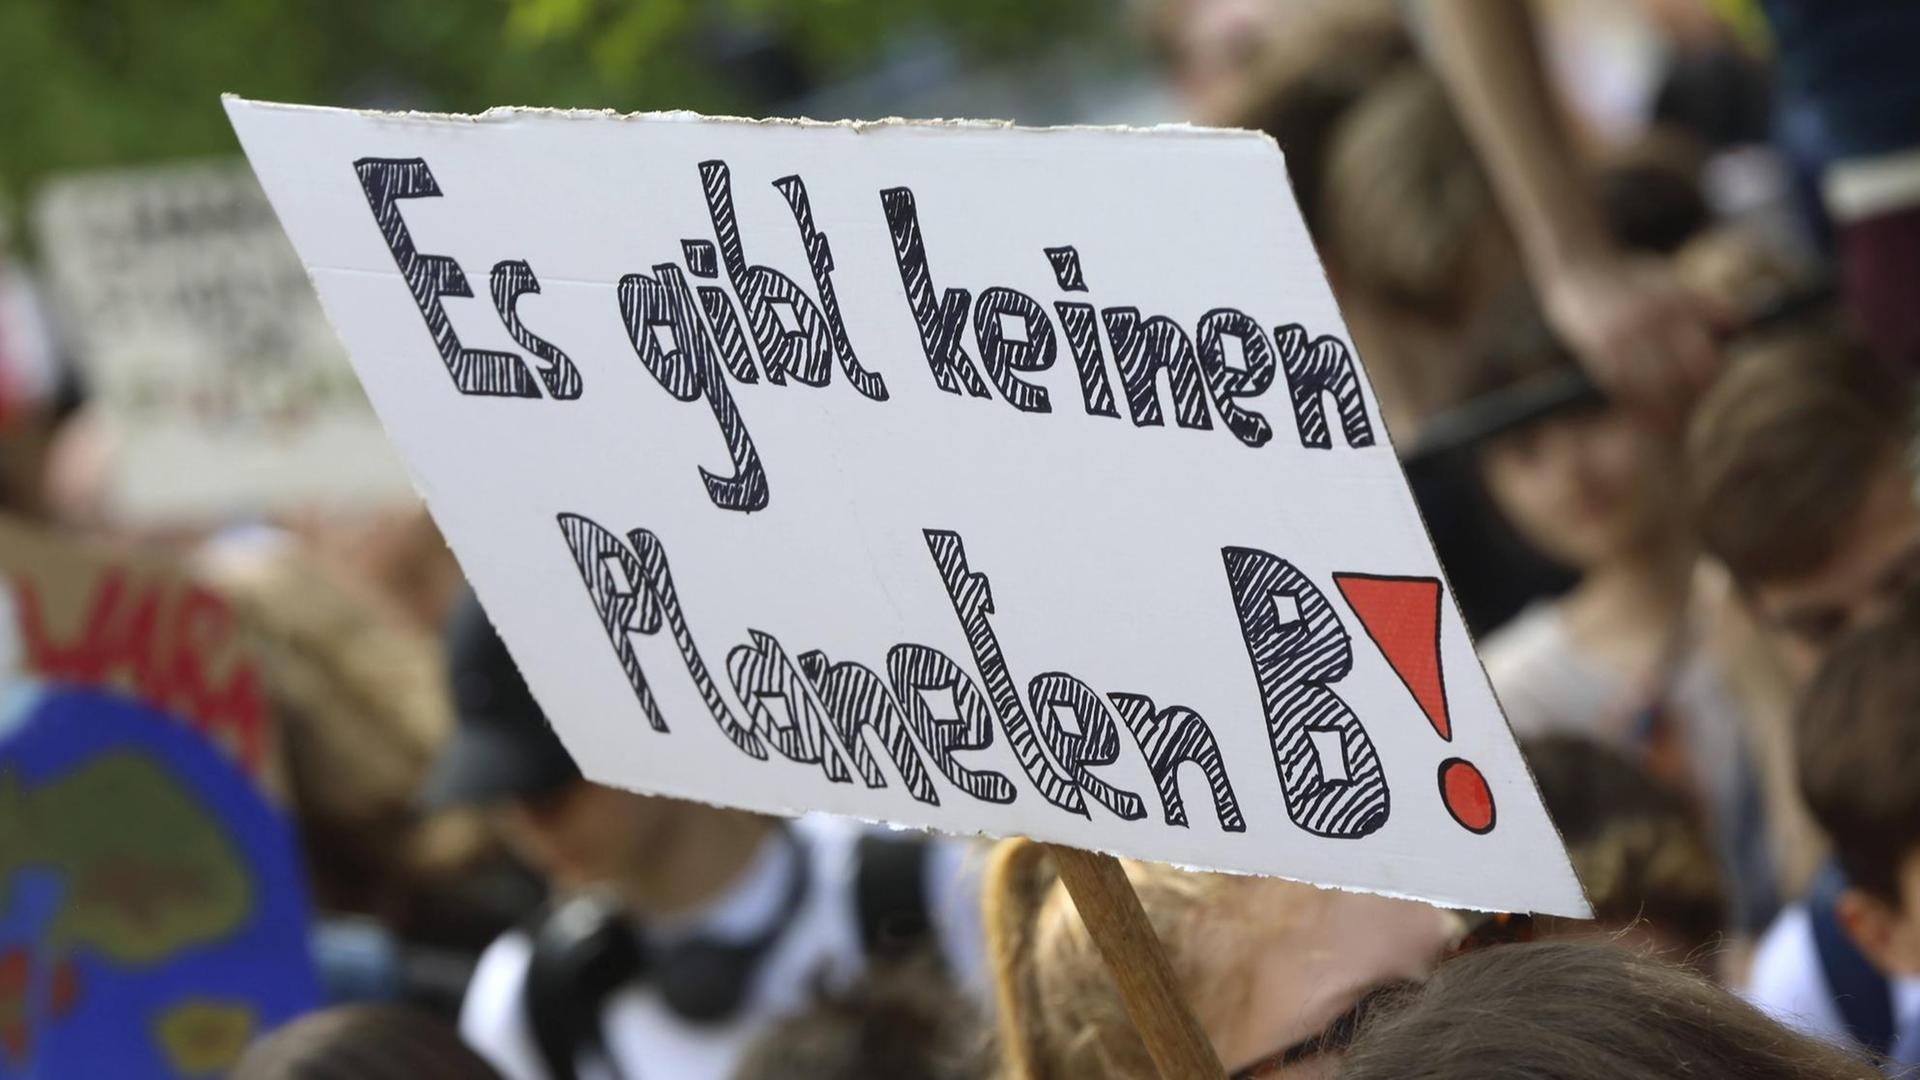 Auf einer Friday-for-Future-Demo in Berlin wird ein Schild hochgehalten, auf dem "Es gibt keinen Planeten B" steht.